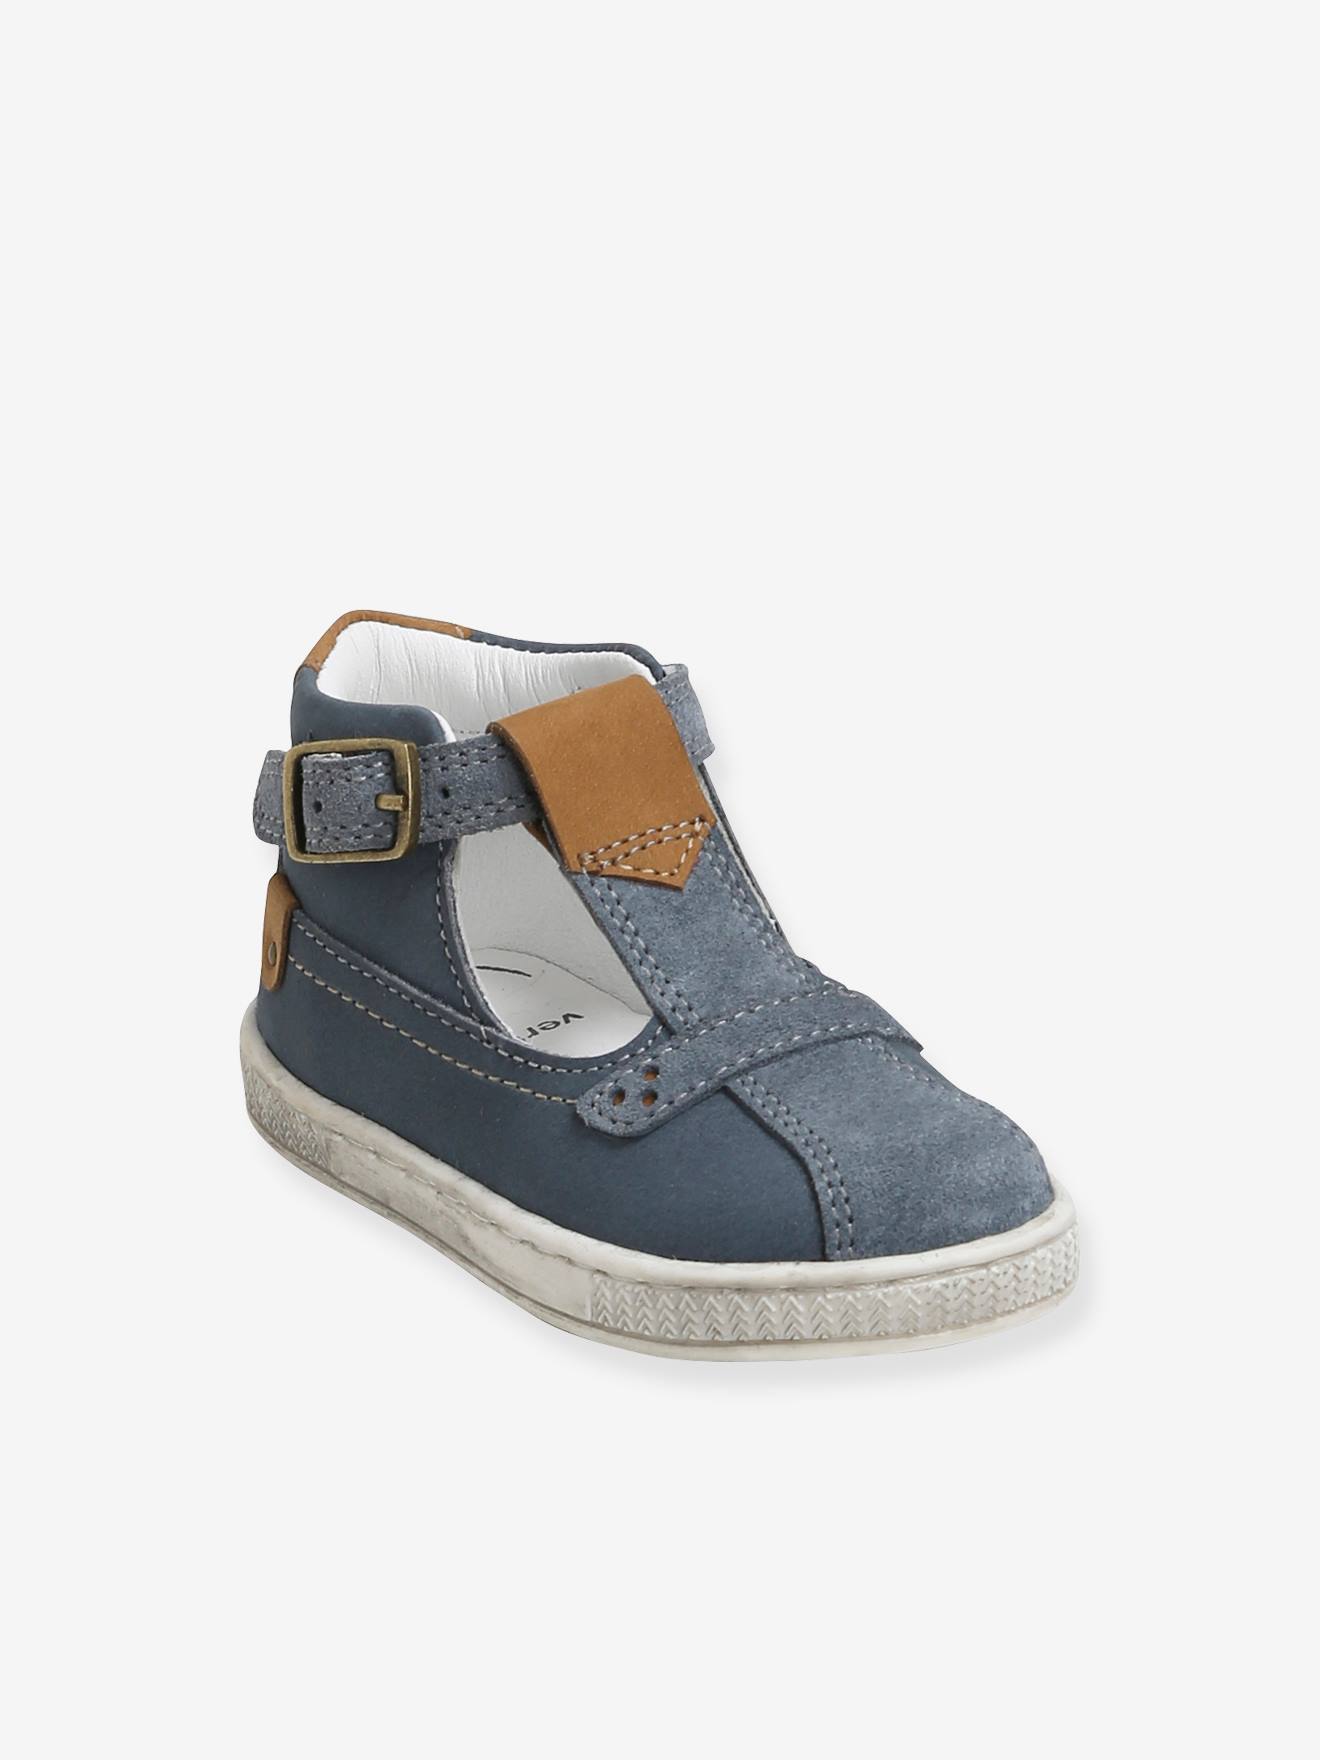 Sandales cuir bébé garçon premiers pas bleu jean